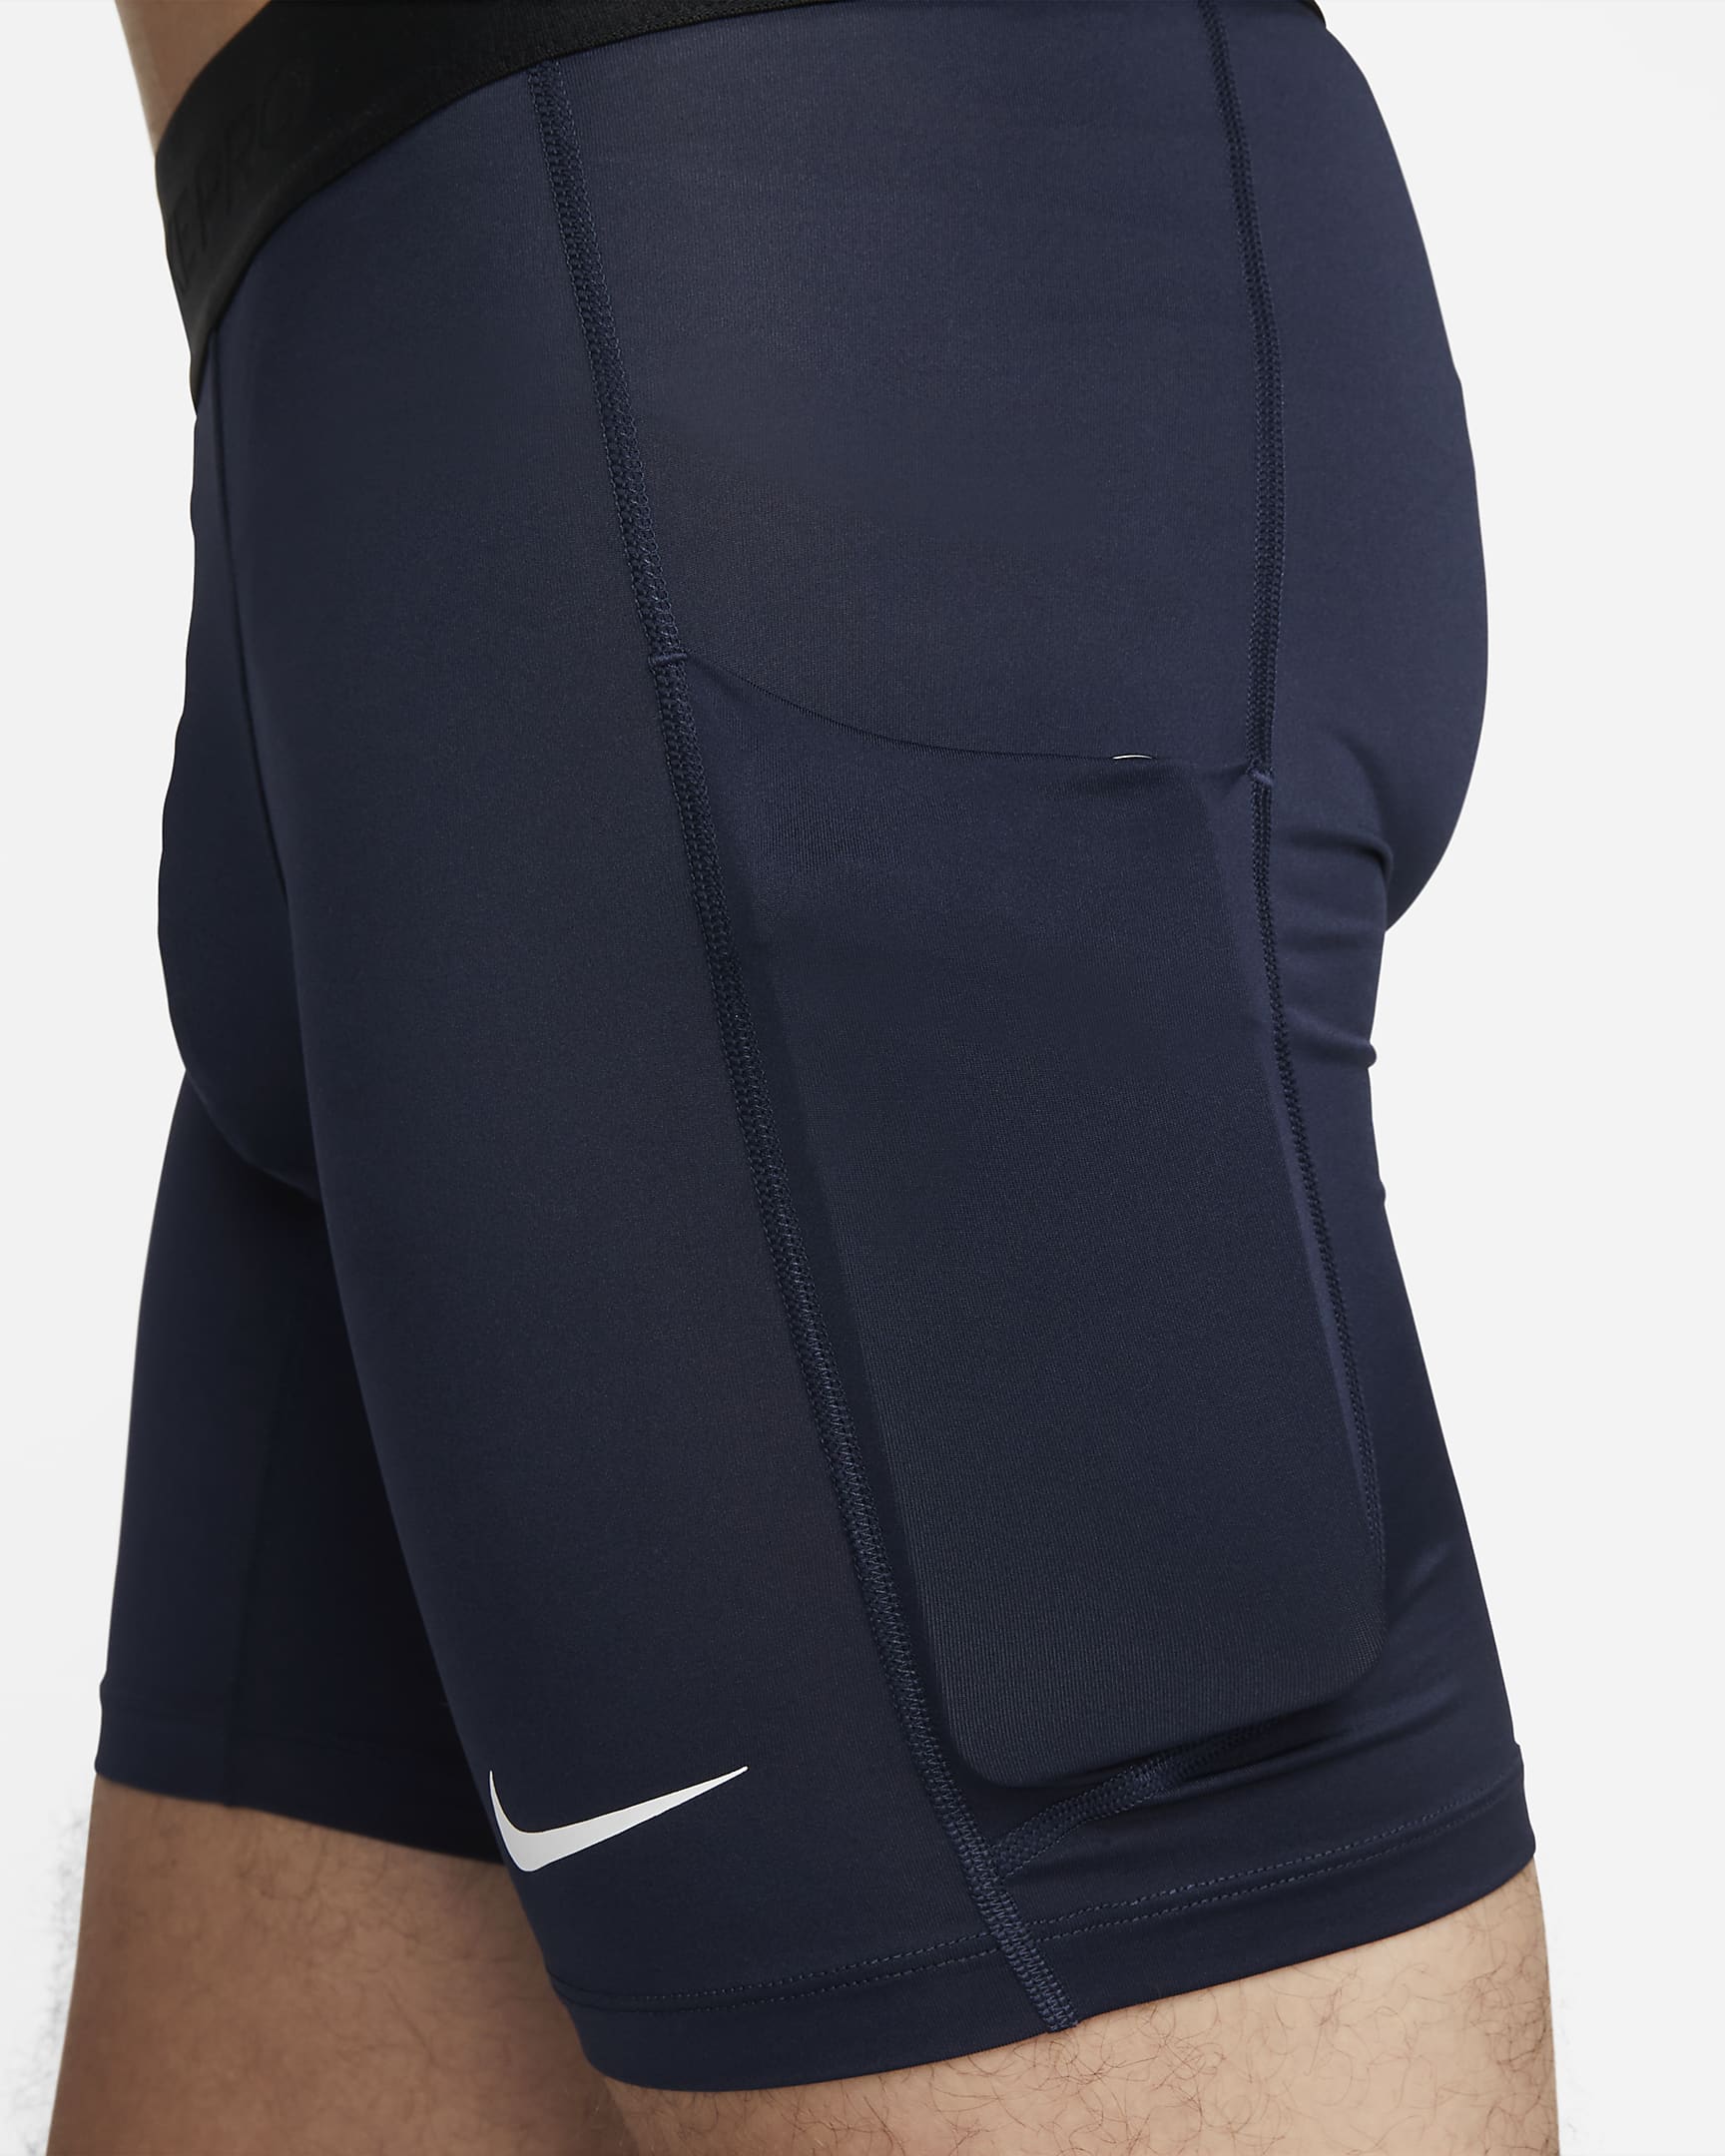 Nike Pro Men's Dri-FIT Fitness Shorts. Nike SG